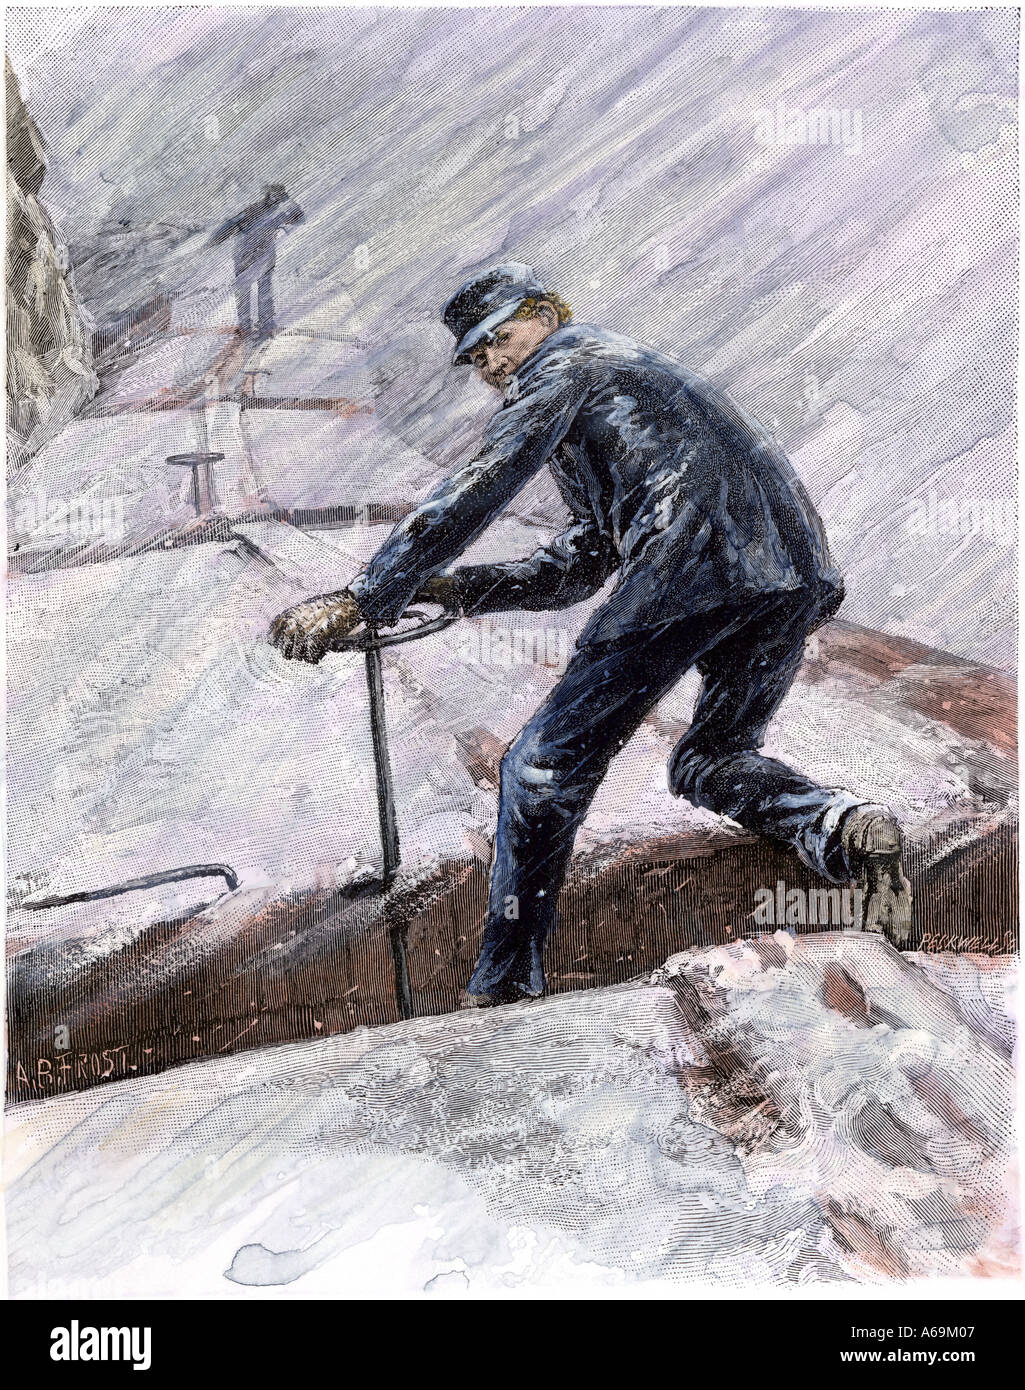 Railroad les serre-freins de travailler sur un train de marchandises en une tempête de 1890. À la main, gravure sur bois Banque D'Images